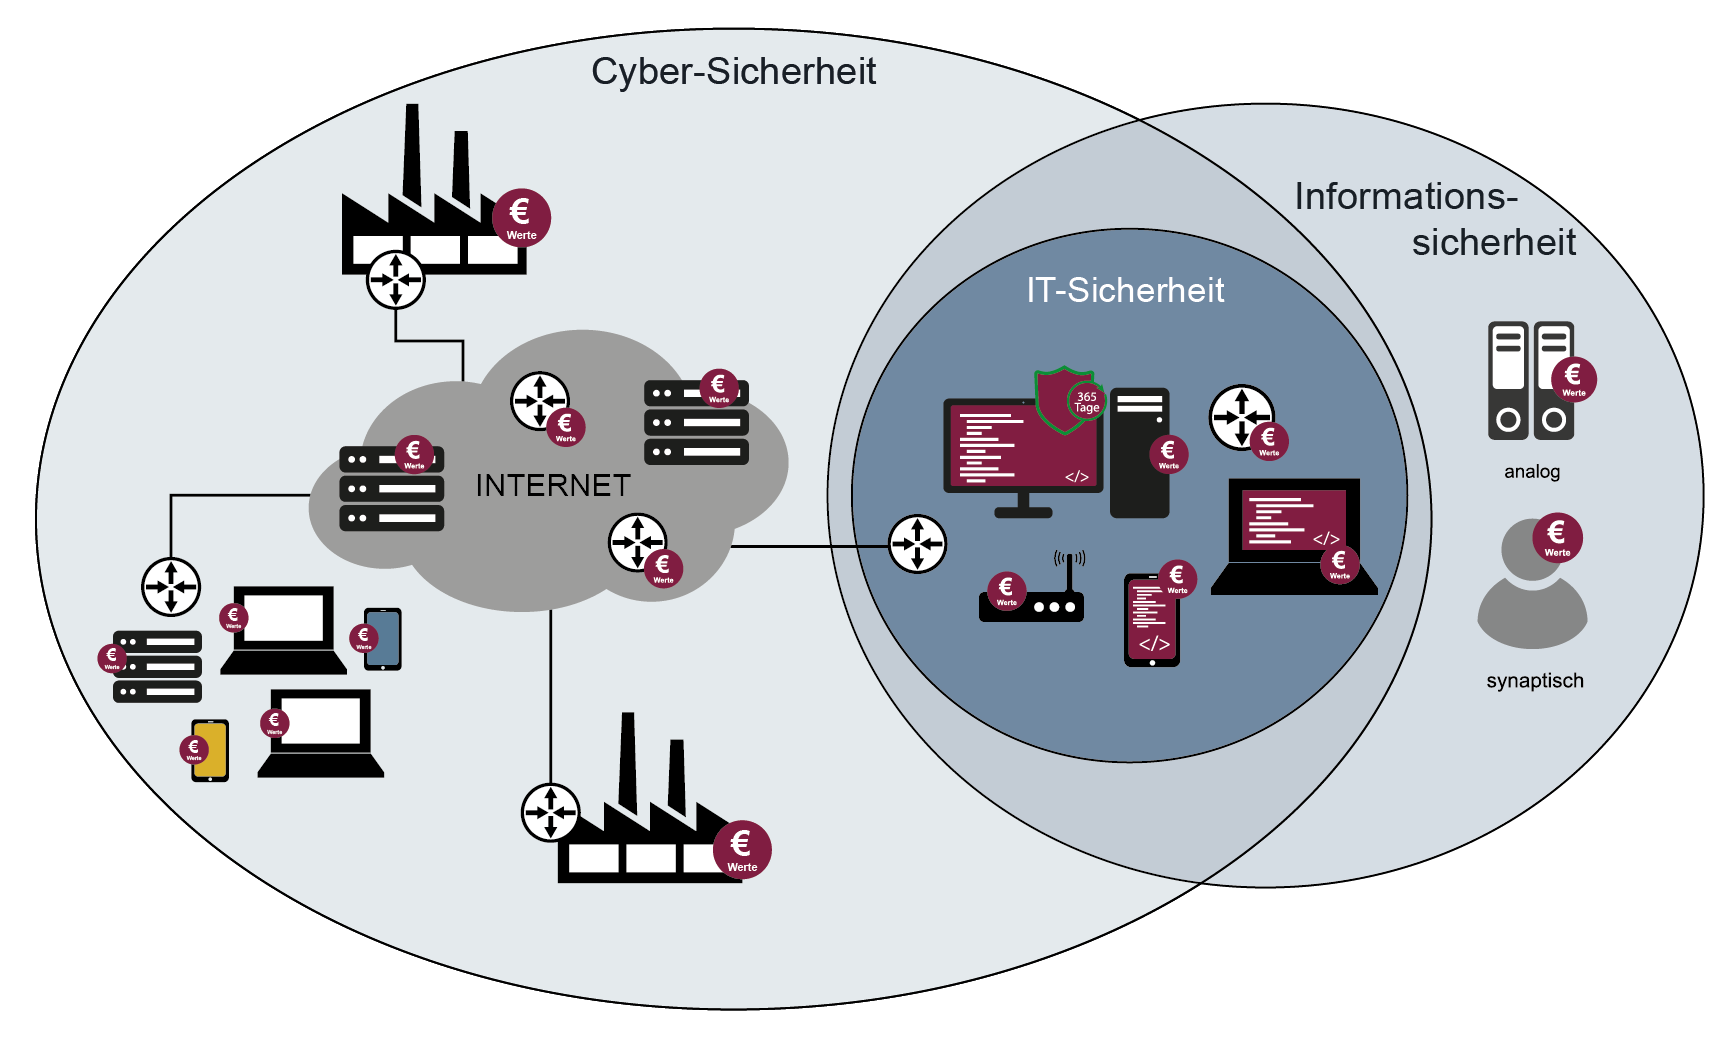 Informationssicherheit in Zusammenhang mit Cyber-Sicherheit und IT-Sicherheit